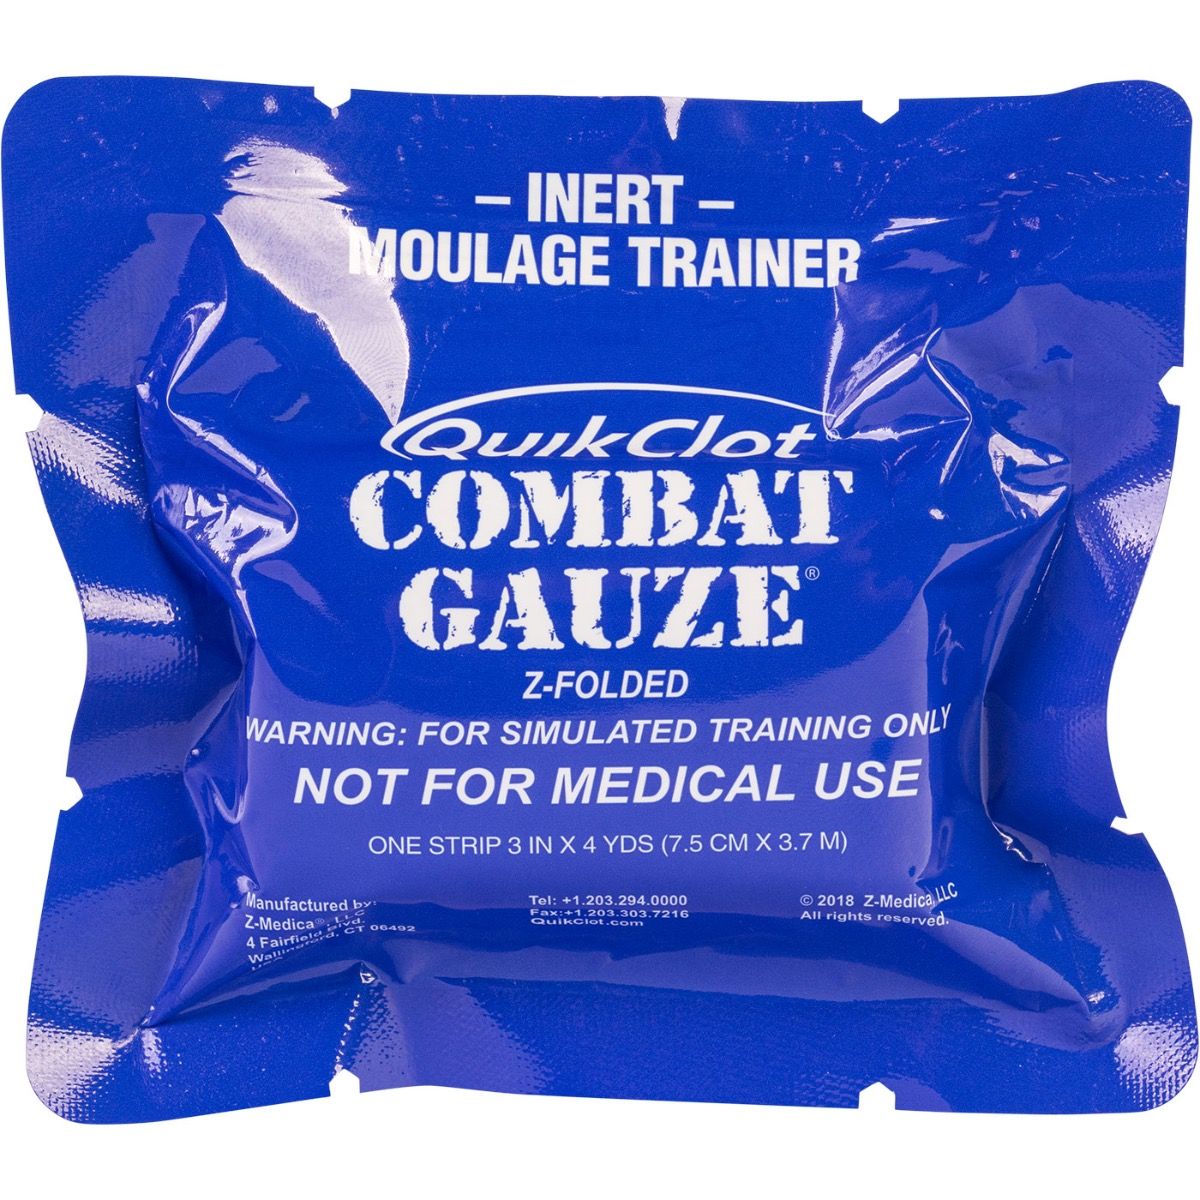 Combat Gauze Trainer